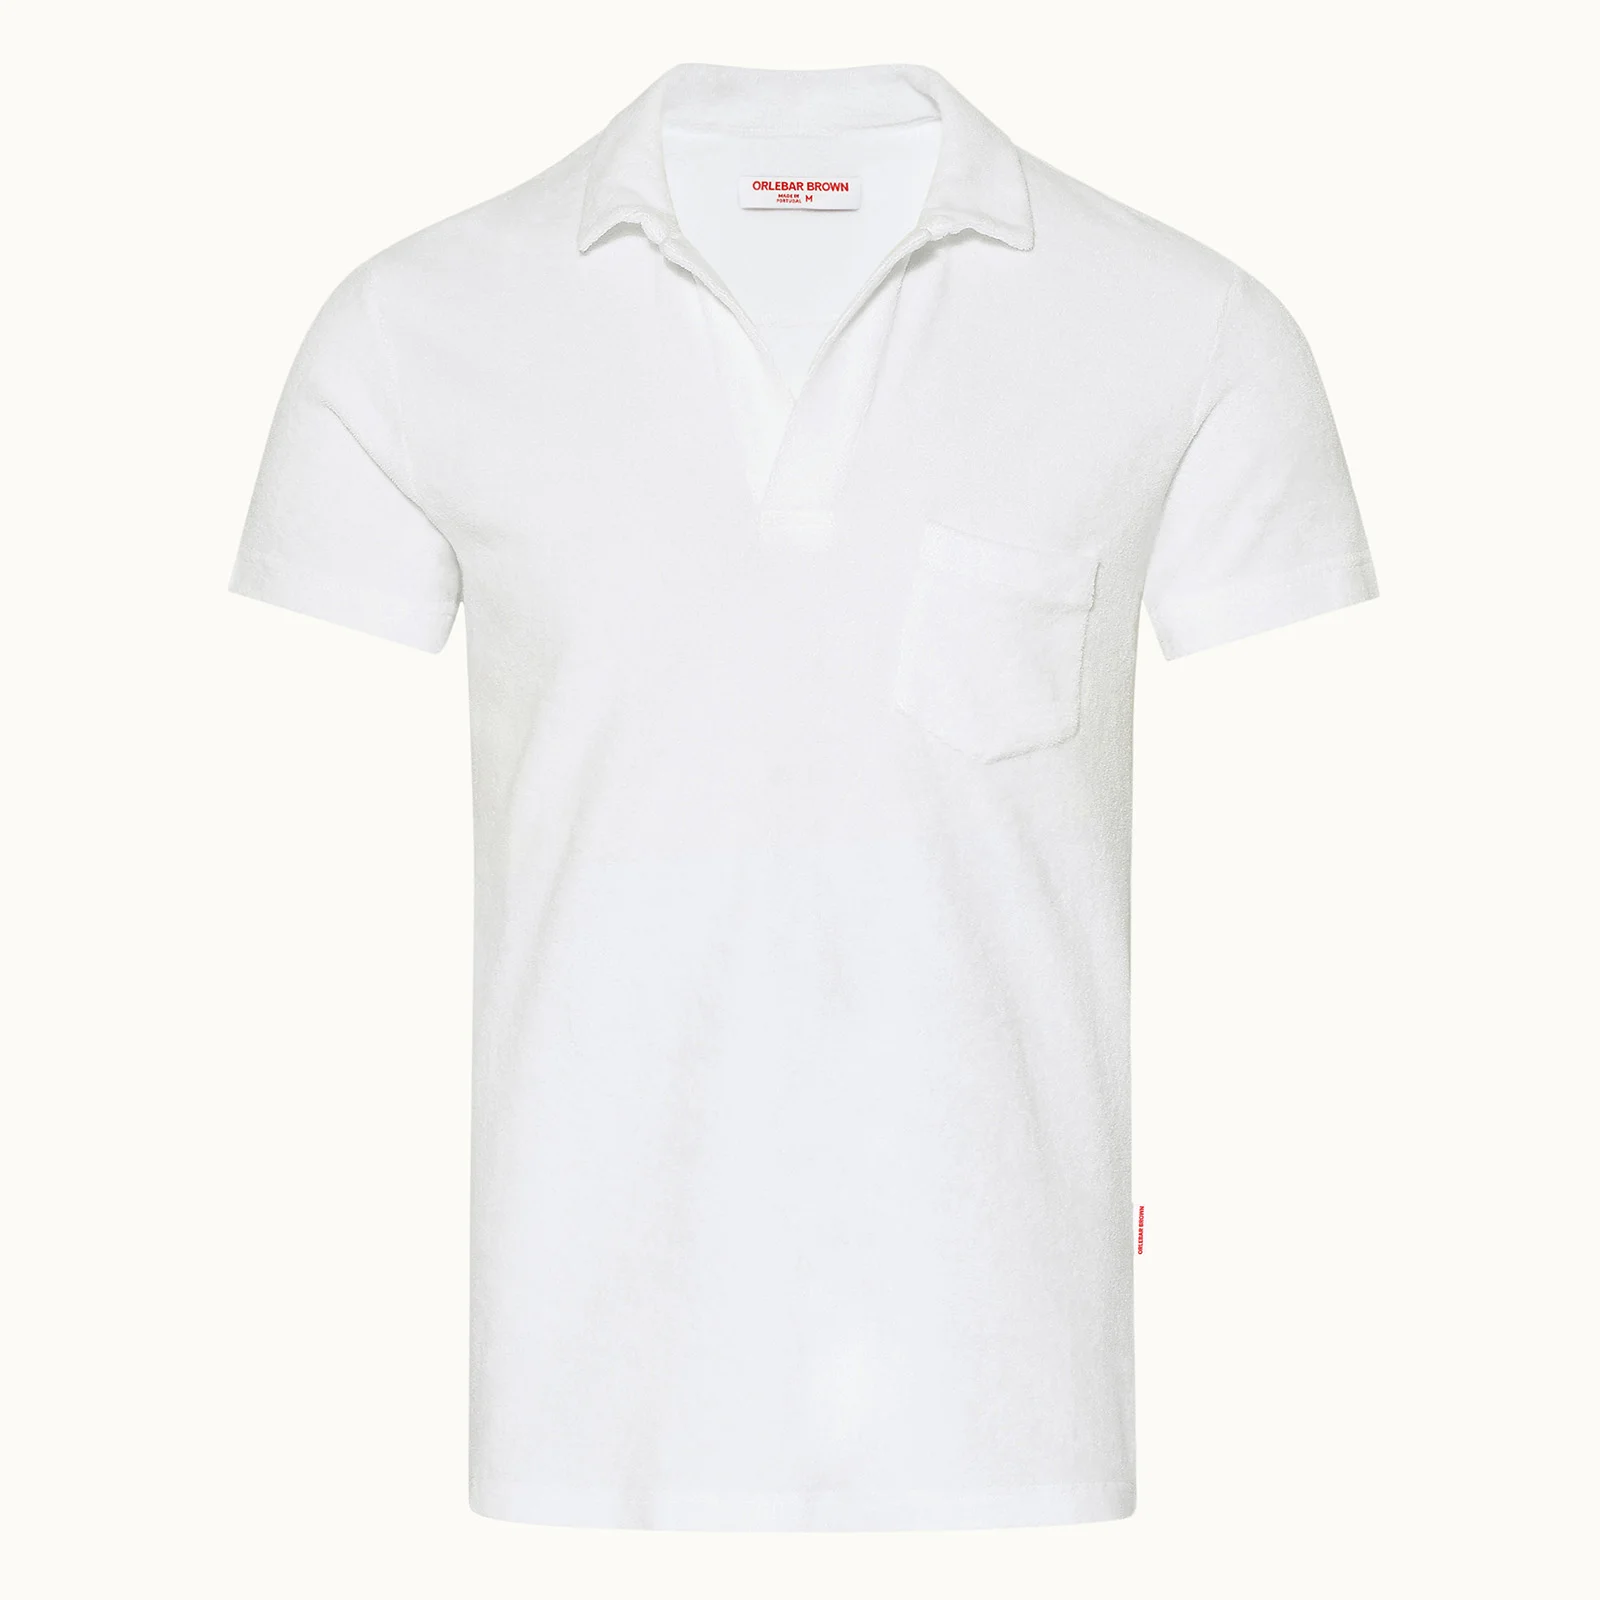 Orlebar Brown Men's Terry T-Shirt - White Image 1